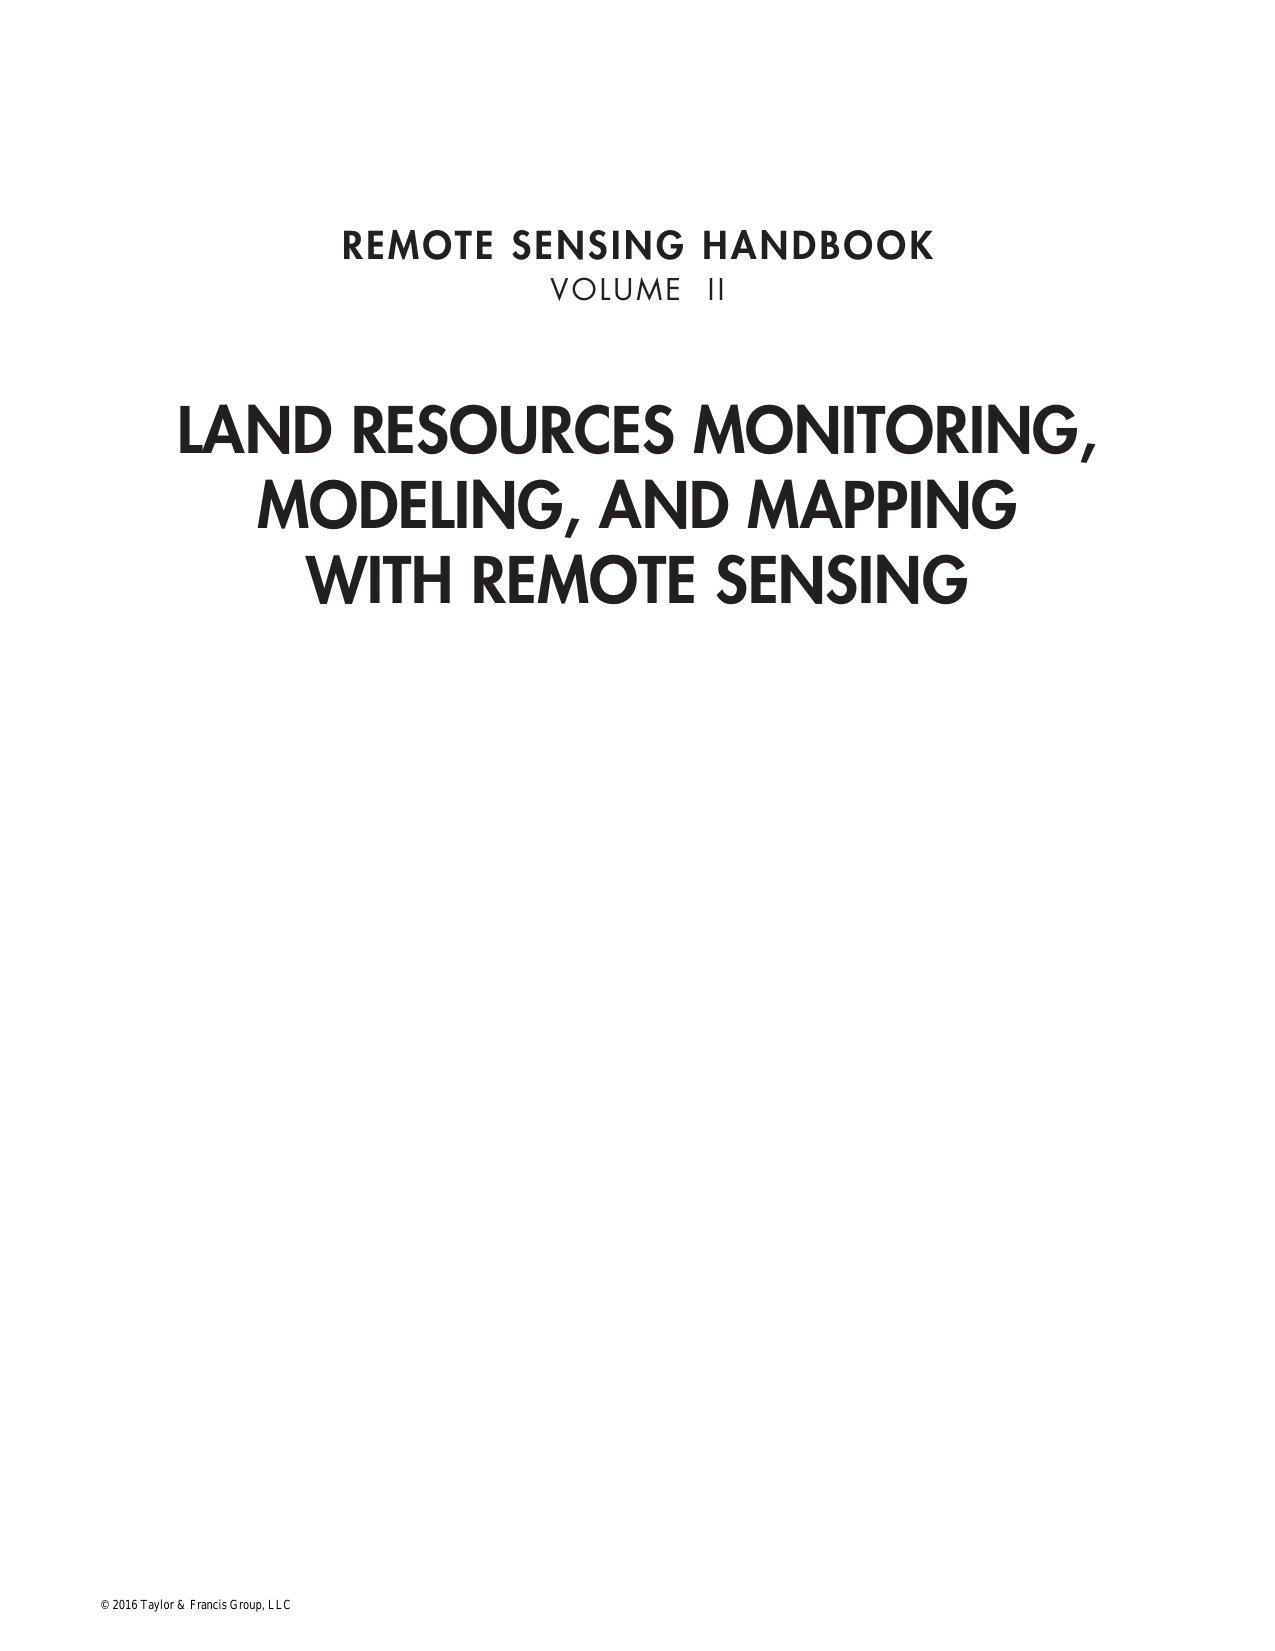 Remote Sensing Handbook Volume 2